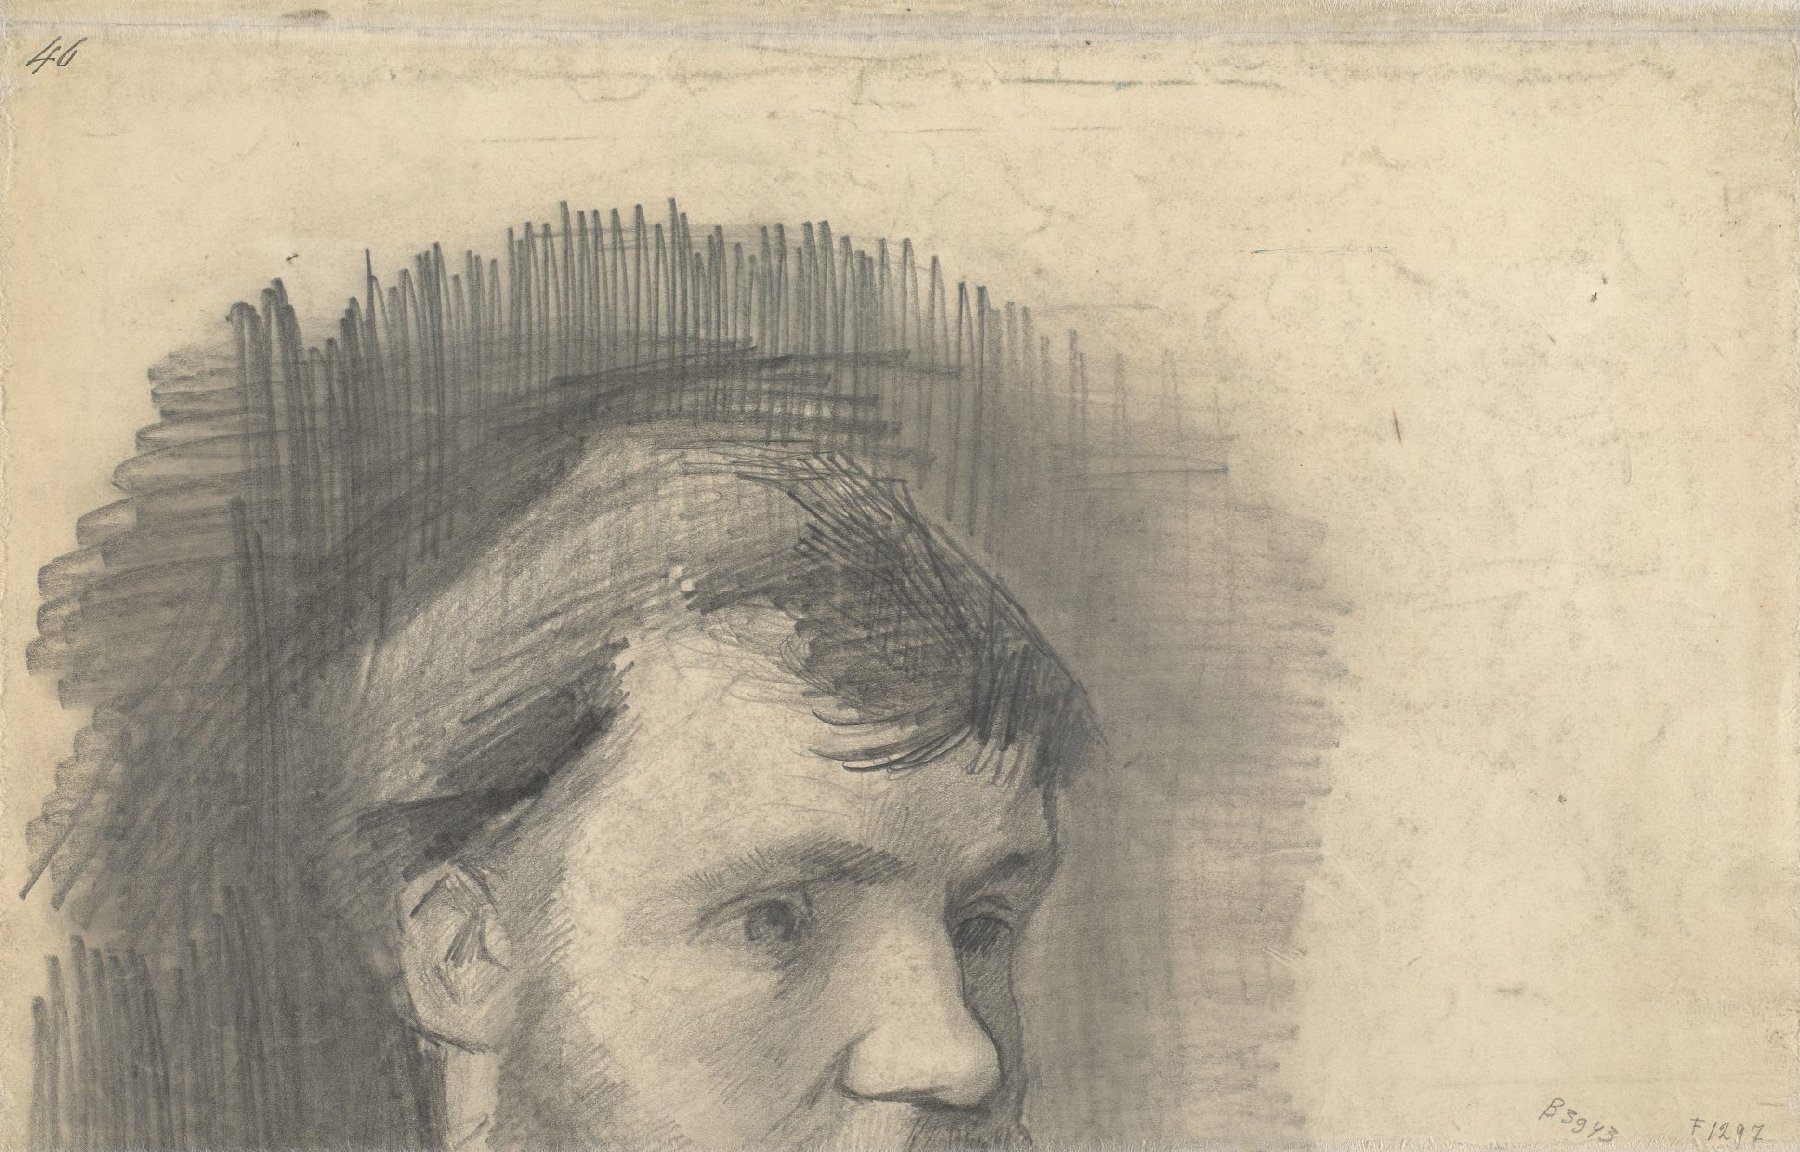 Deel van een portret van Anthon van Rappard Vincent van Gogh (1853 - 1890), Nuenen, oktober 1884